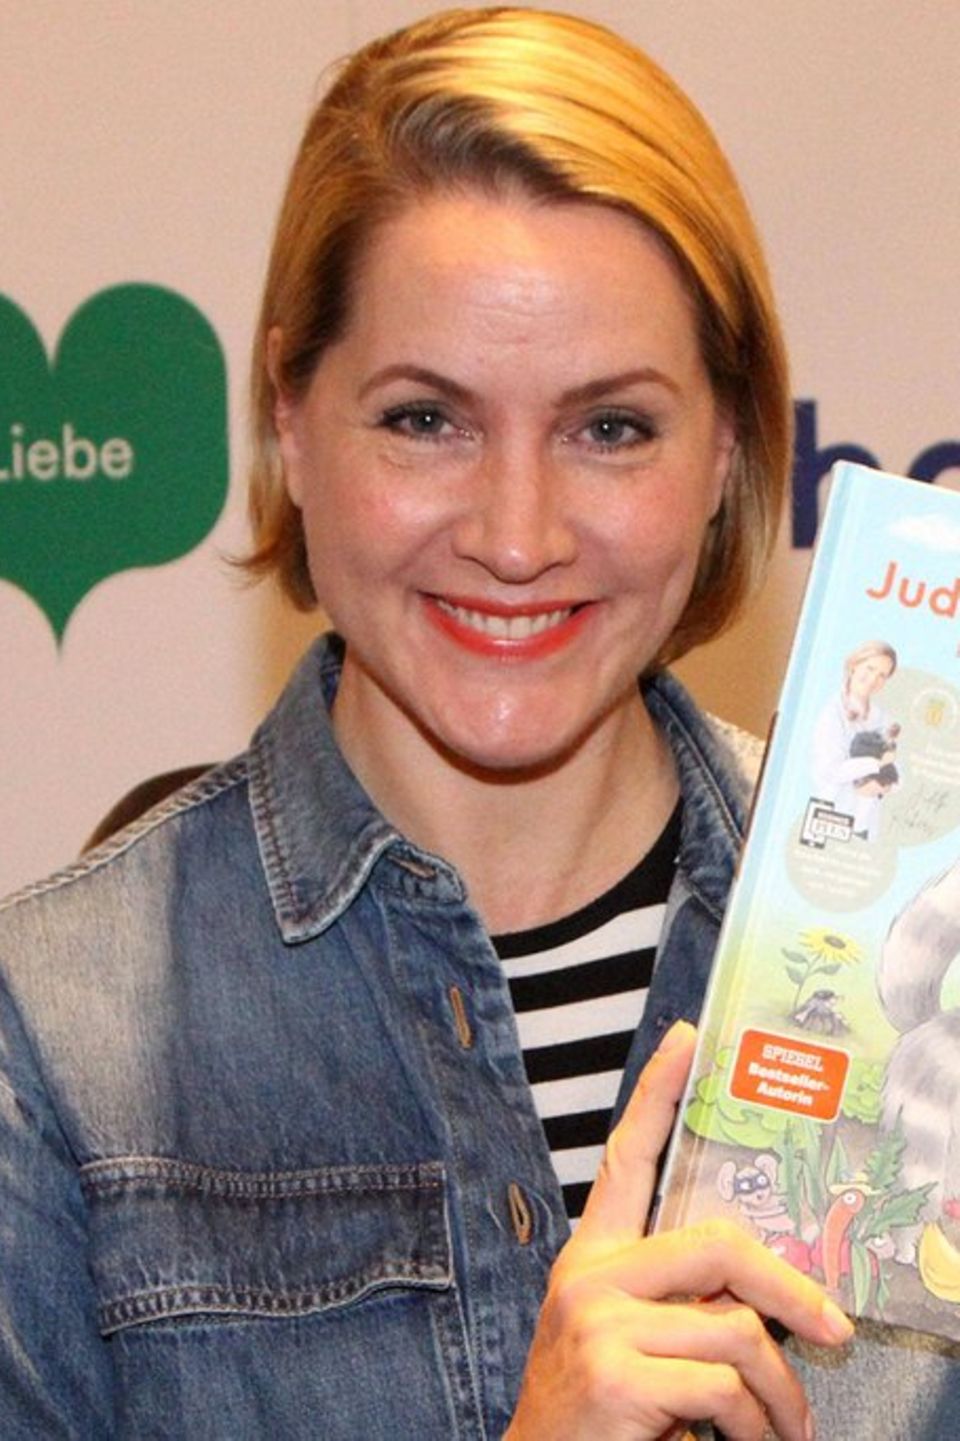 Nie wieder "Tagesschau": Judith Rakers mit ihrem frisch erschienenen Kinderbuch "Judiths kleine Farm"